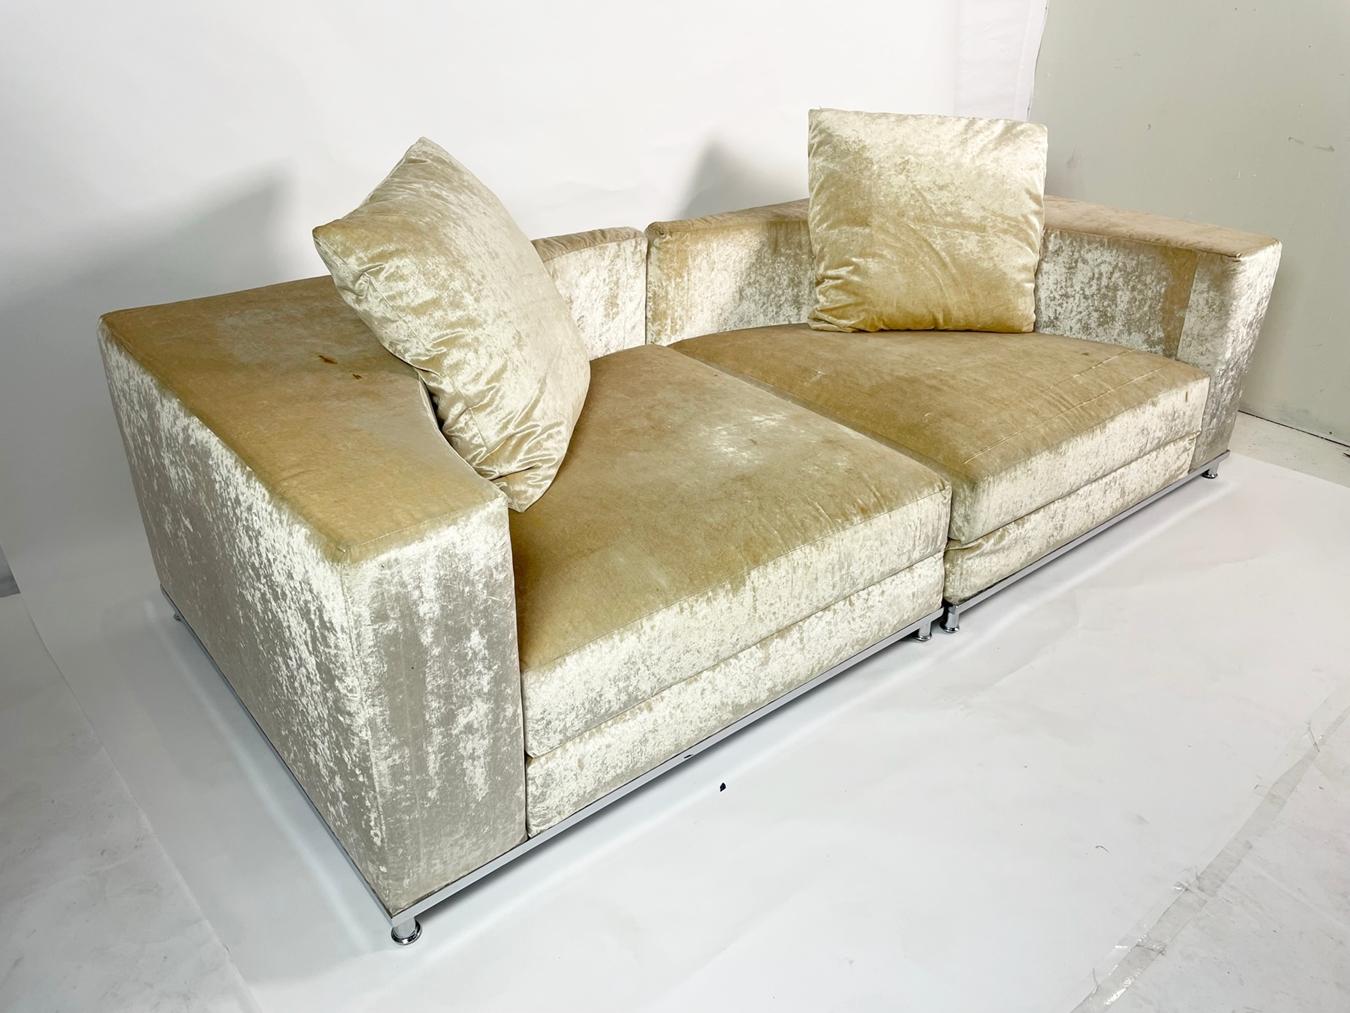 2-teiliges Sektionssofa, entworfen und hergestellt in Italien von Saba Italia.

Das Sofa hat ein verchromtes Gestell mit abnehmbaren Kissen und wird mit 2 Kissen geliefert, eine sehr moderne und coole Variante eines Sektionssofas.

Das Sofa wird